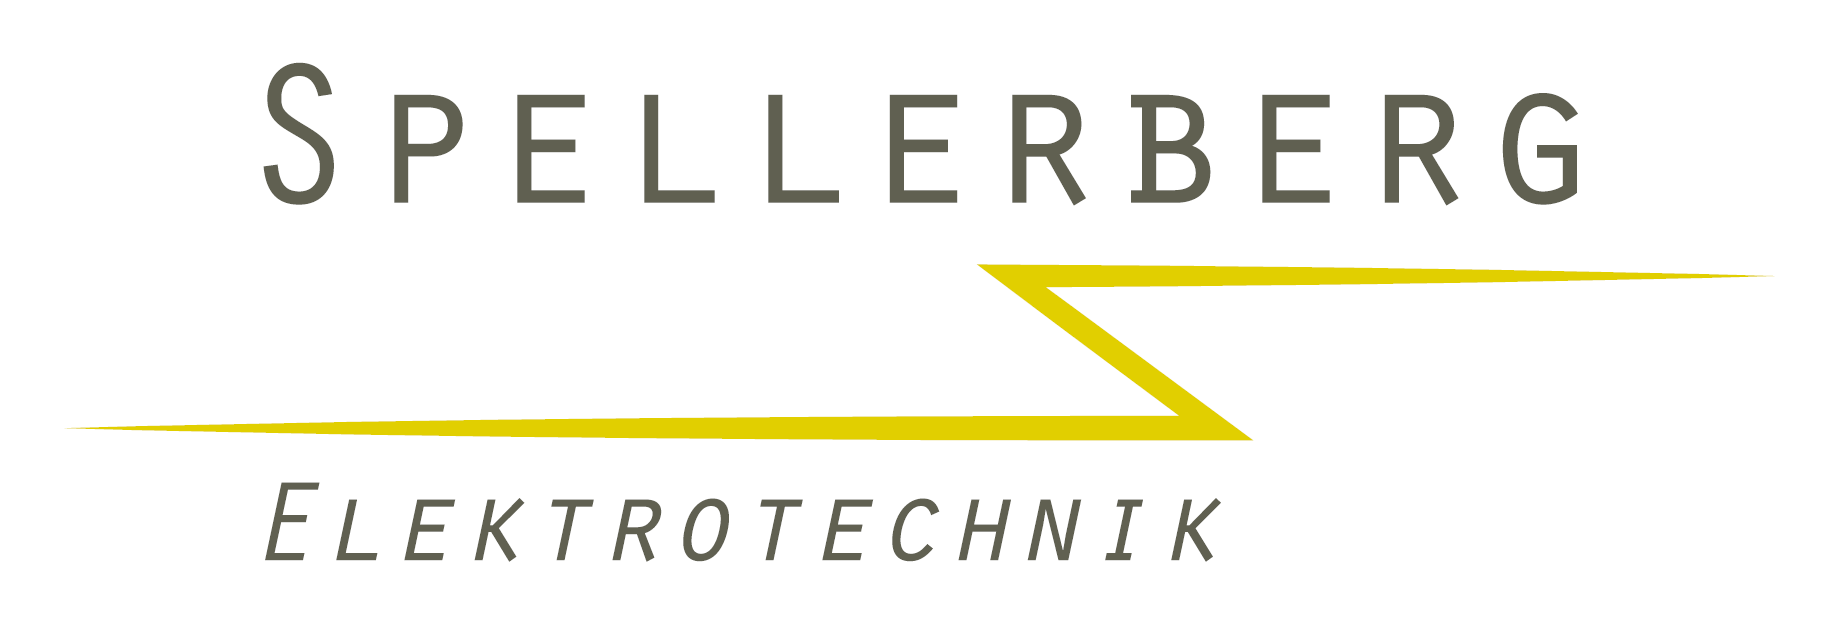 Spellerberg Elektrotechnik